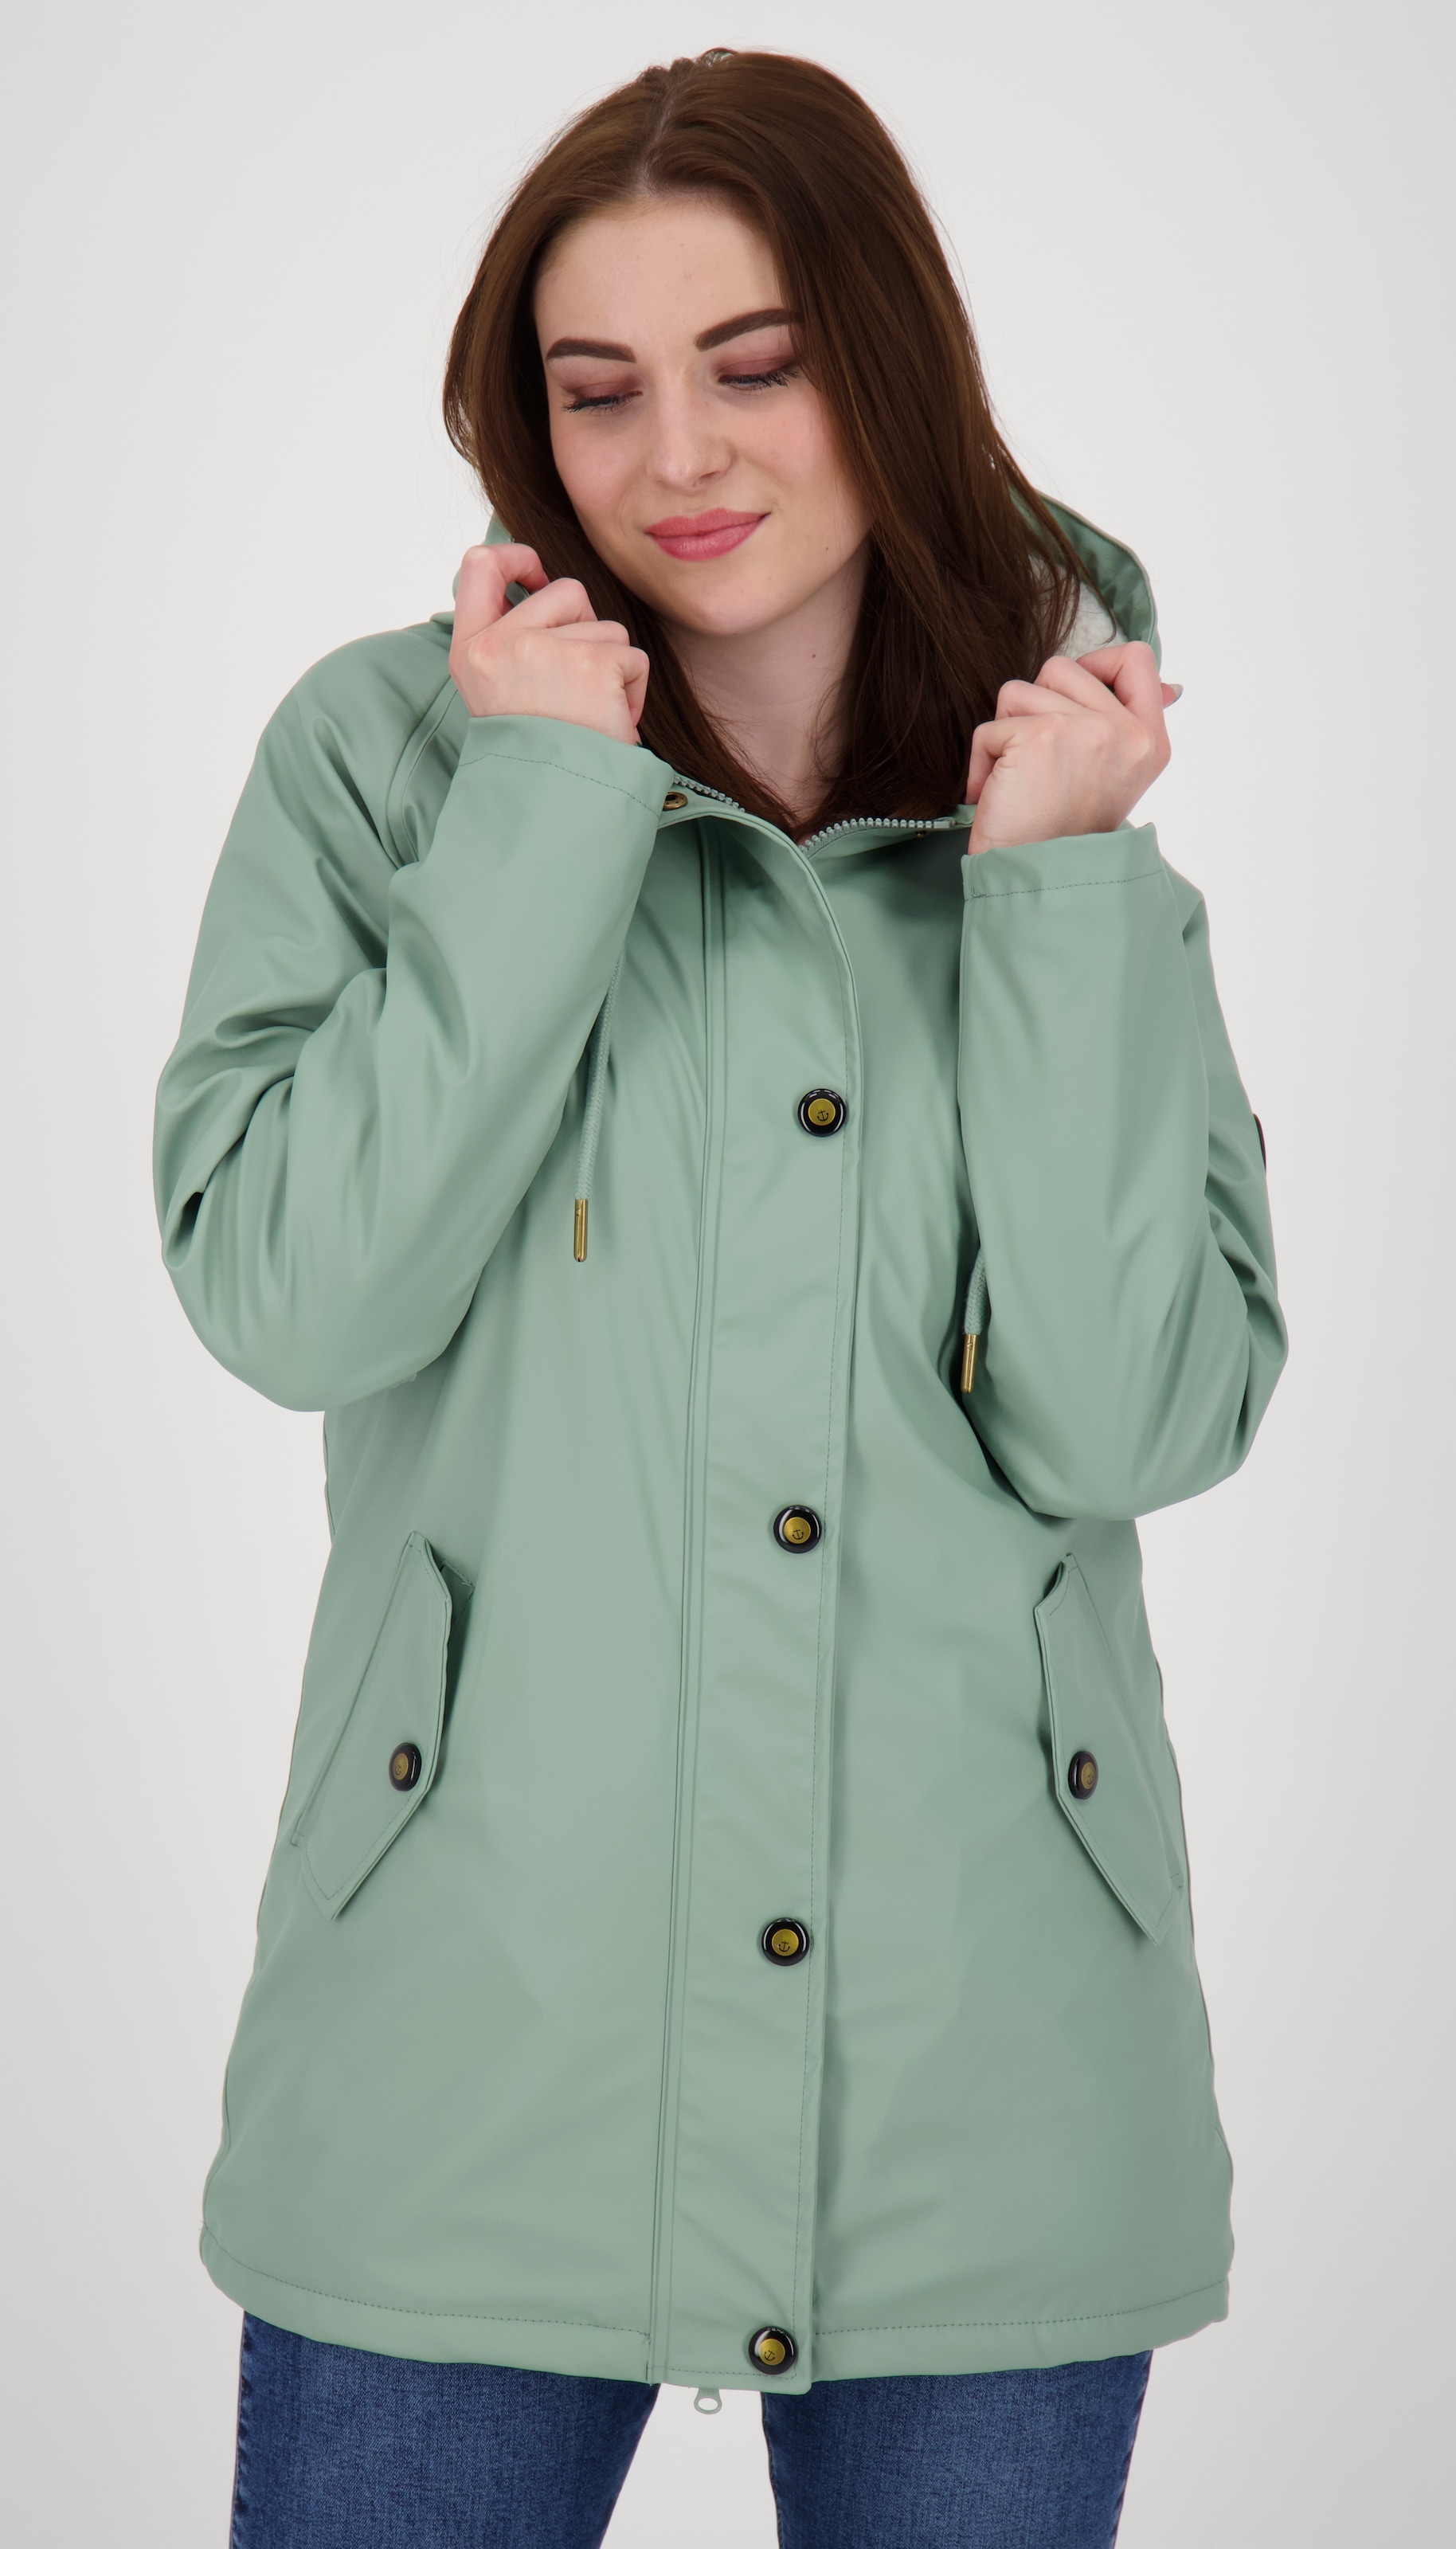 Regenmantel für Damen online kaufen jetzt OTTO Regenmäntel | bei